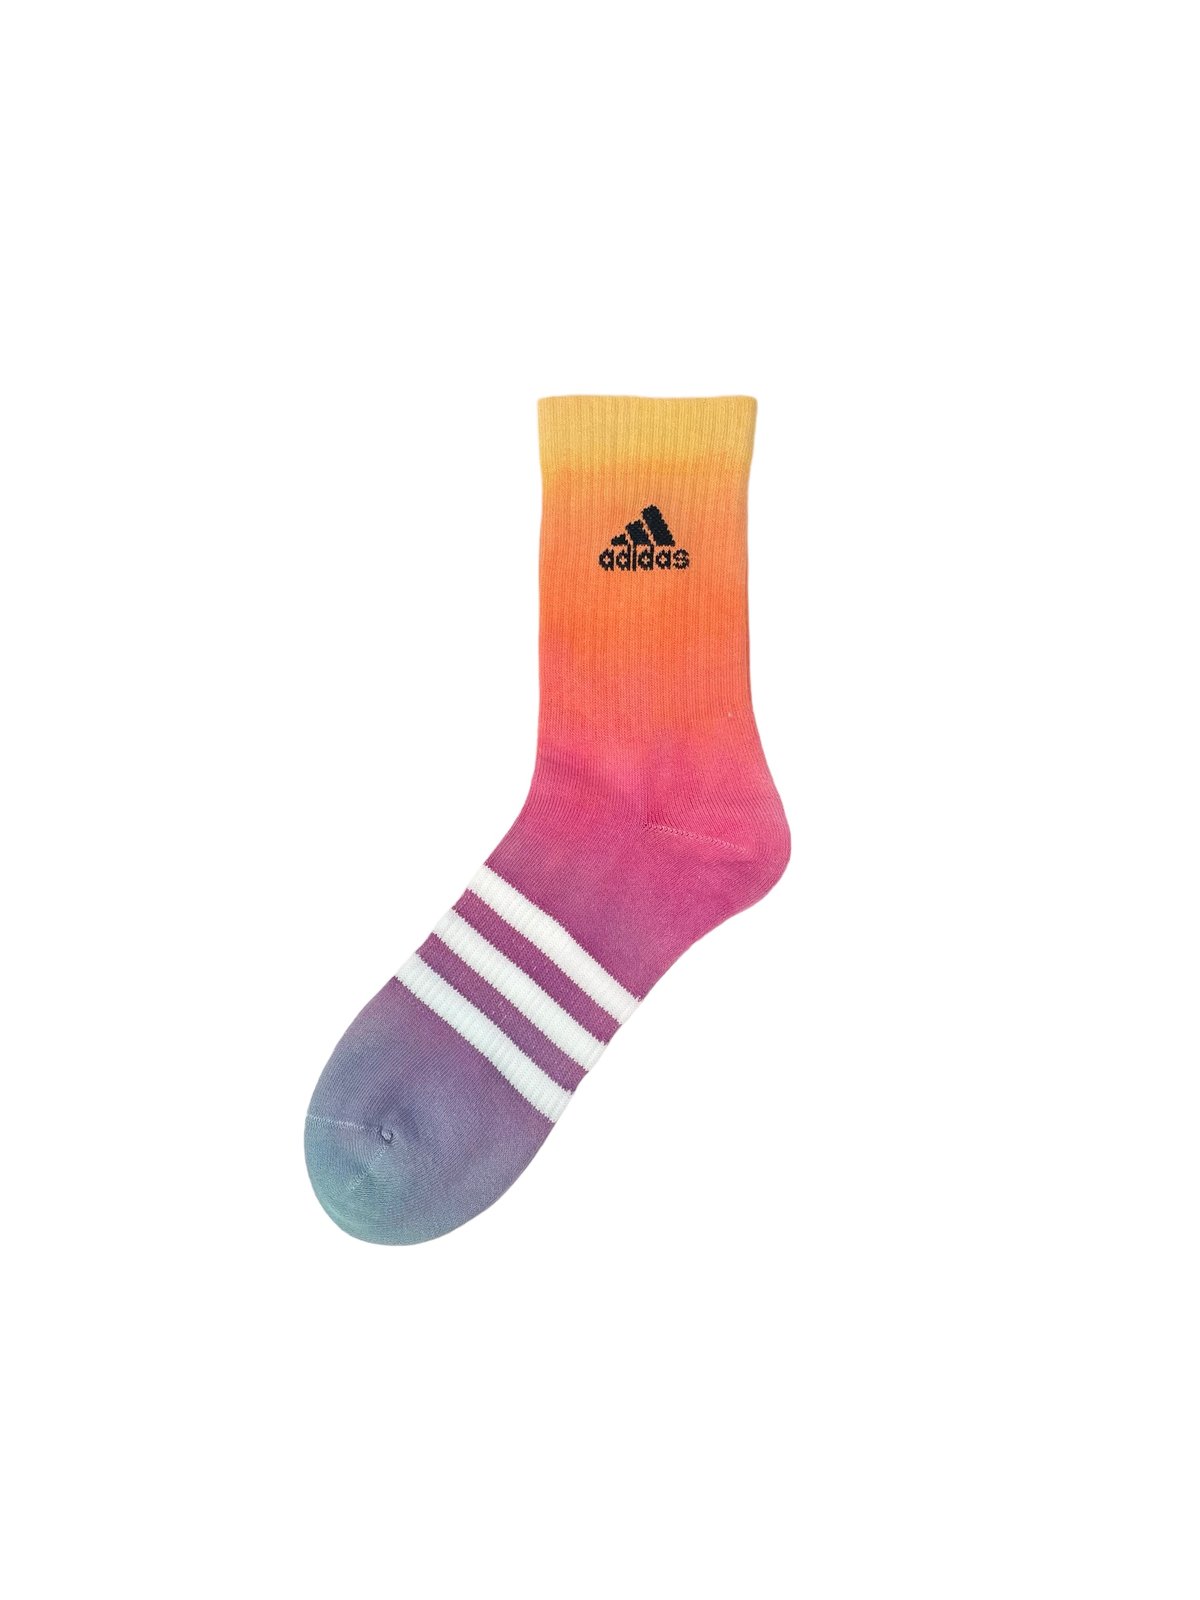 Image of Adidas Socks Dyed Sunset